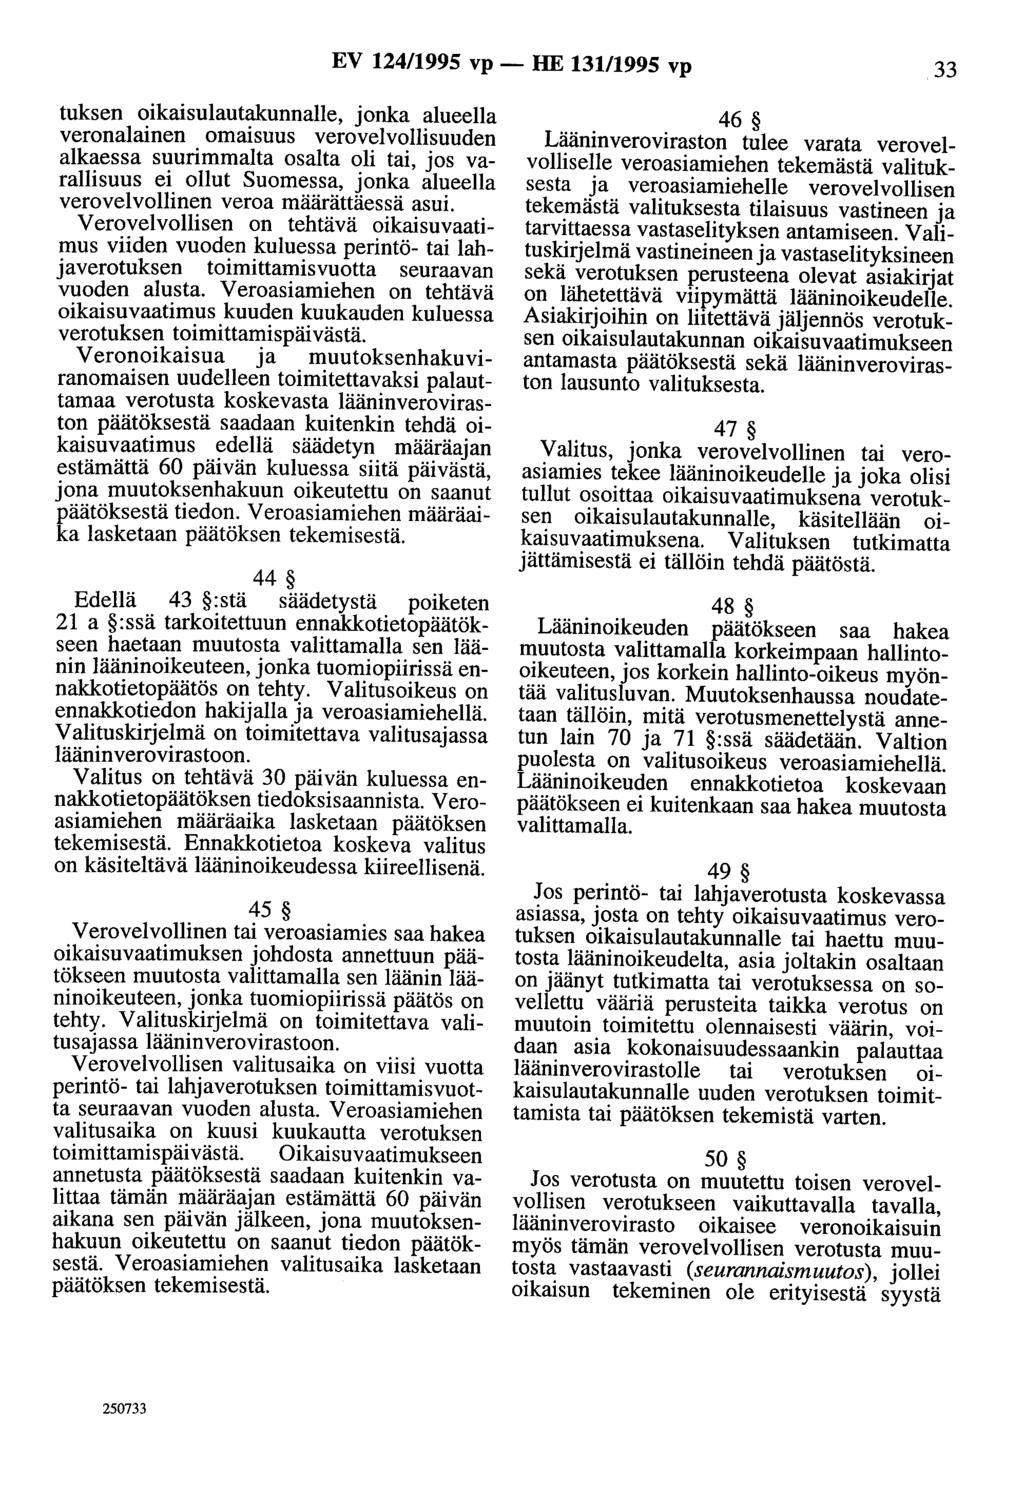 EV 124/1995 vp - HE 131/1995 vp 33 tuksen oikaisulautakunnalle, jonka alueella veronalainen omaisuus verovelvollisuuden alkaessa suurimmalta osalta oli tai, jos varallisuus ei ollut Suomessa, jonka